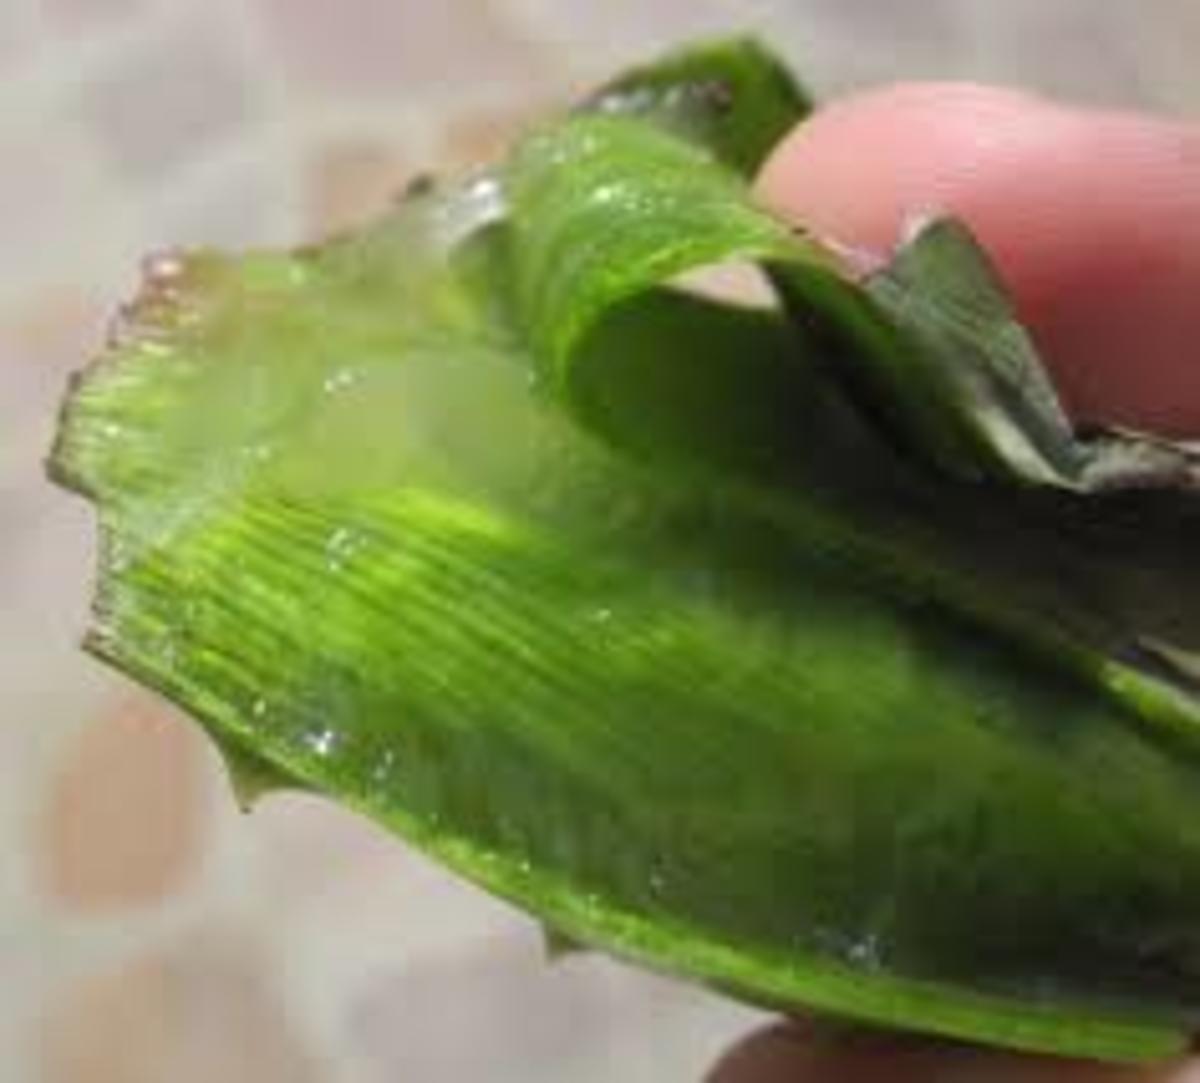 Peeling an aloe leaf reveals the healing gel inside.